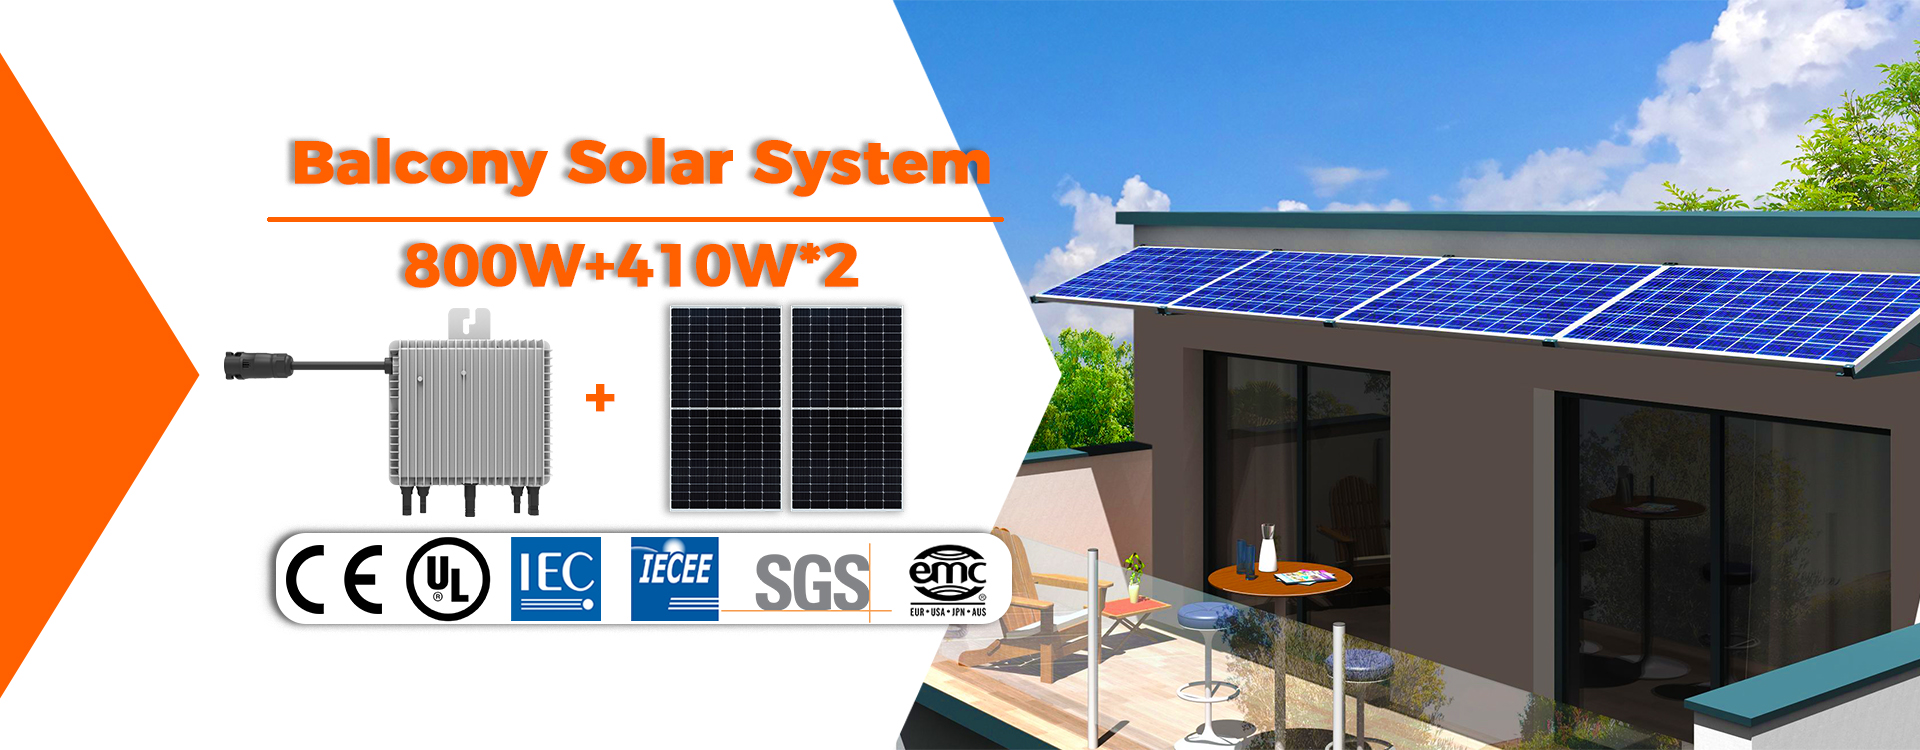 Sistema solar para balcón, panel solar, microinversor